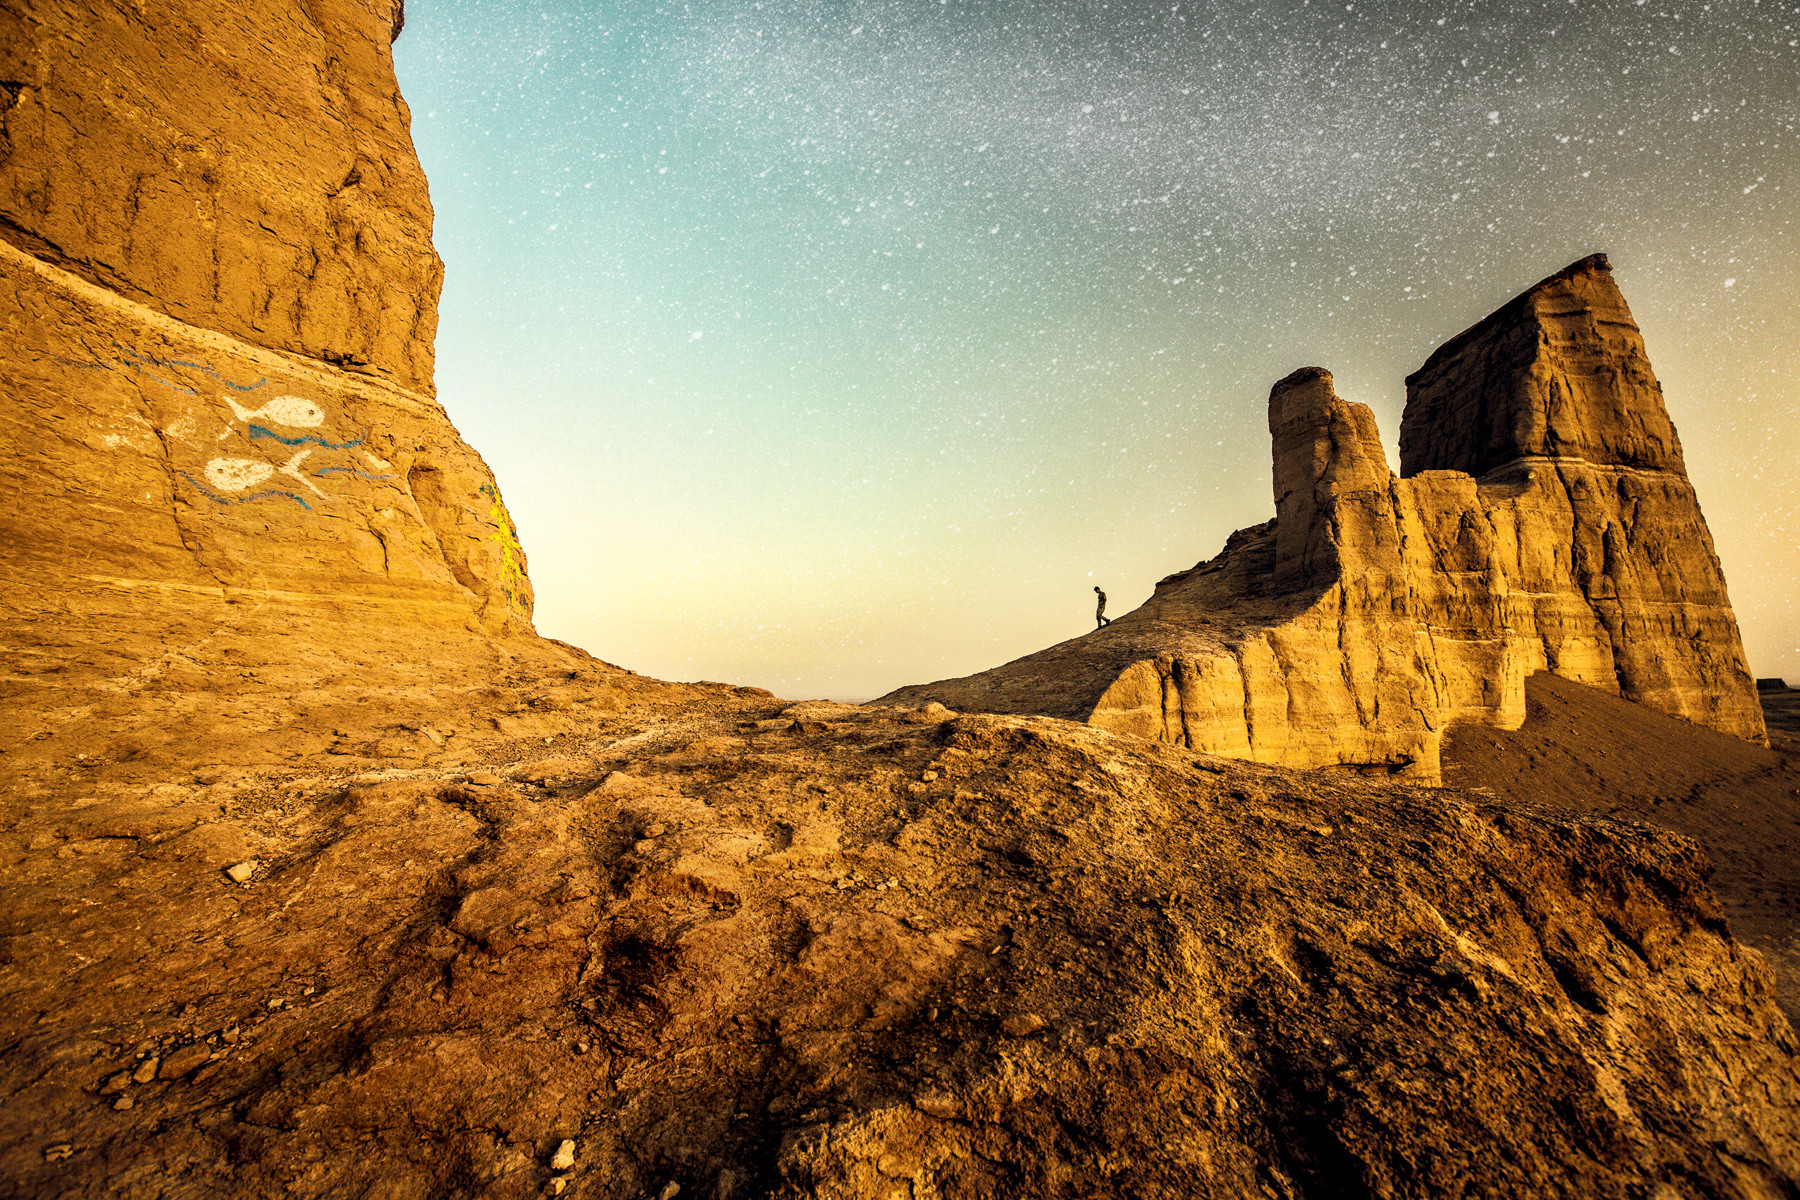 Jij en de sterren in de Dasht-e Lut-woestijn in Iran. Foto: Malou van Breevoort / Columbus Travel